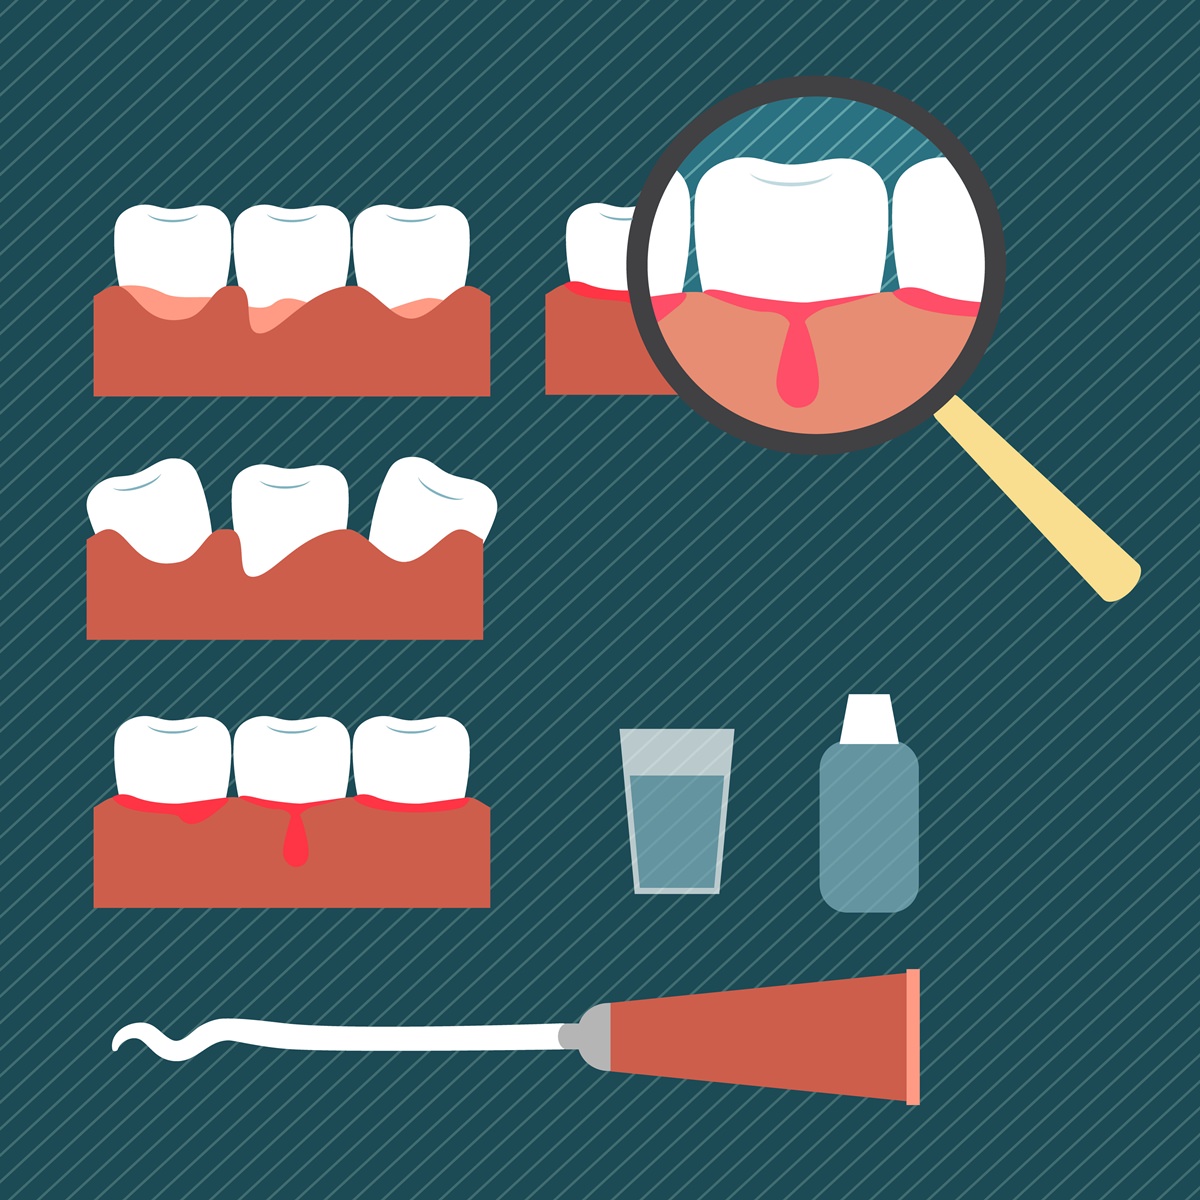 Santé des dents : gare à la parodontite!